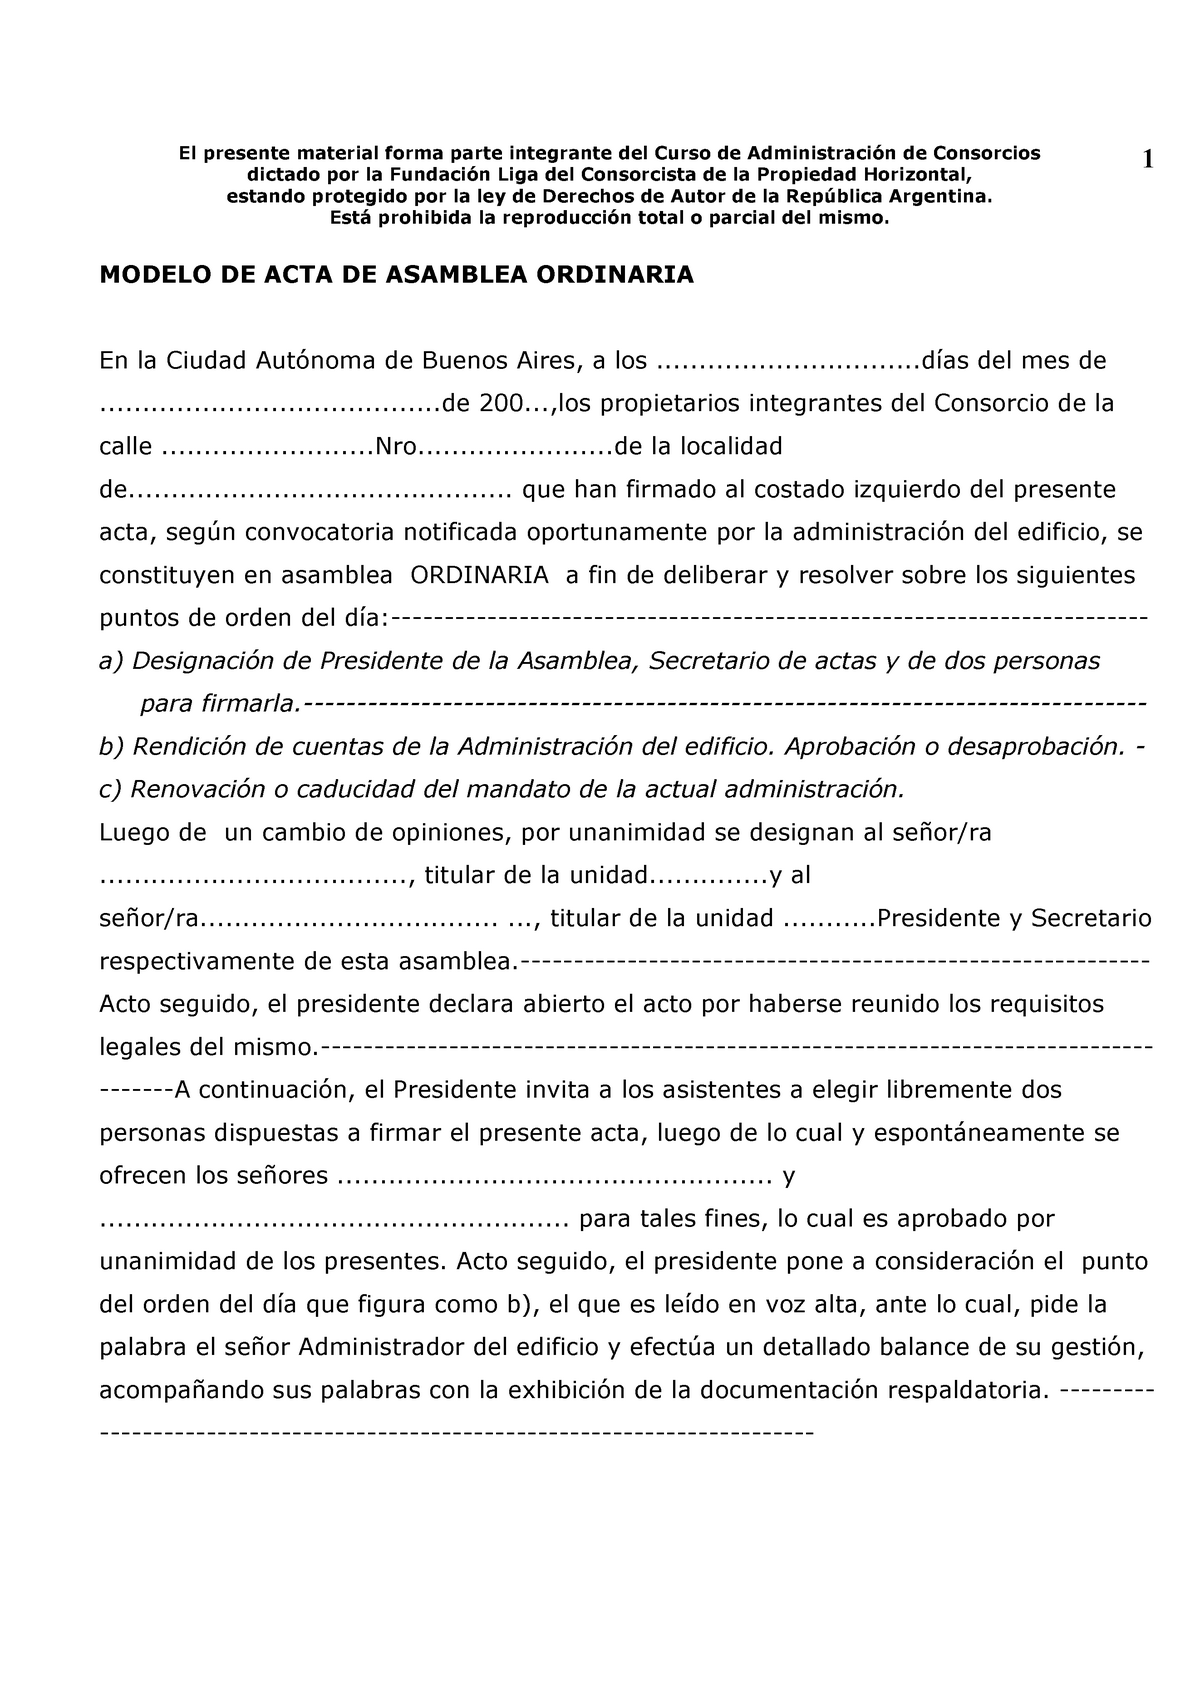 ACTA DE Asamblea Ordinaria - El presente material forma parte integrante  del Curso de Administración - Studocu